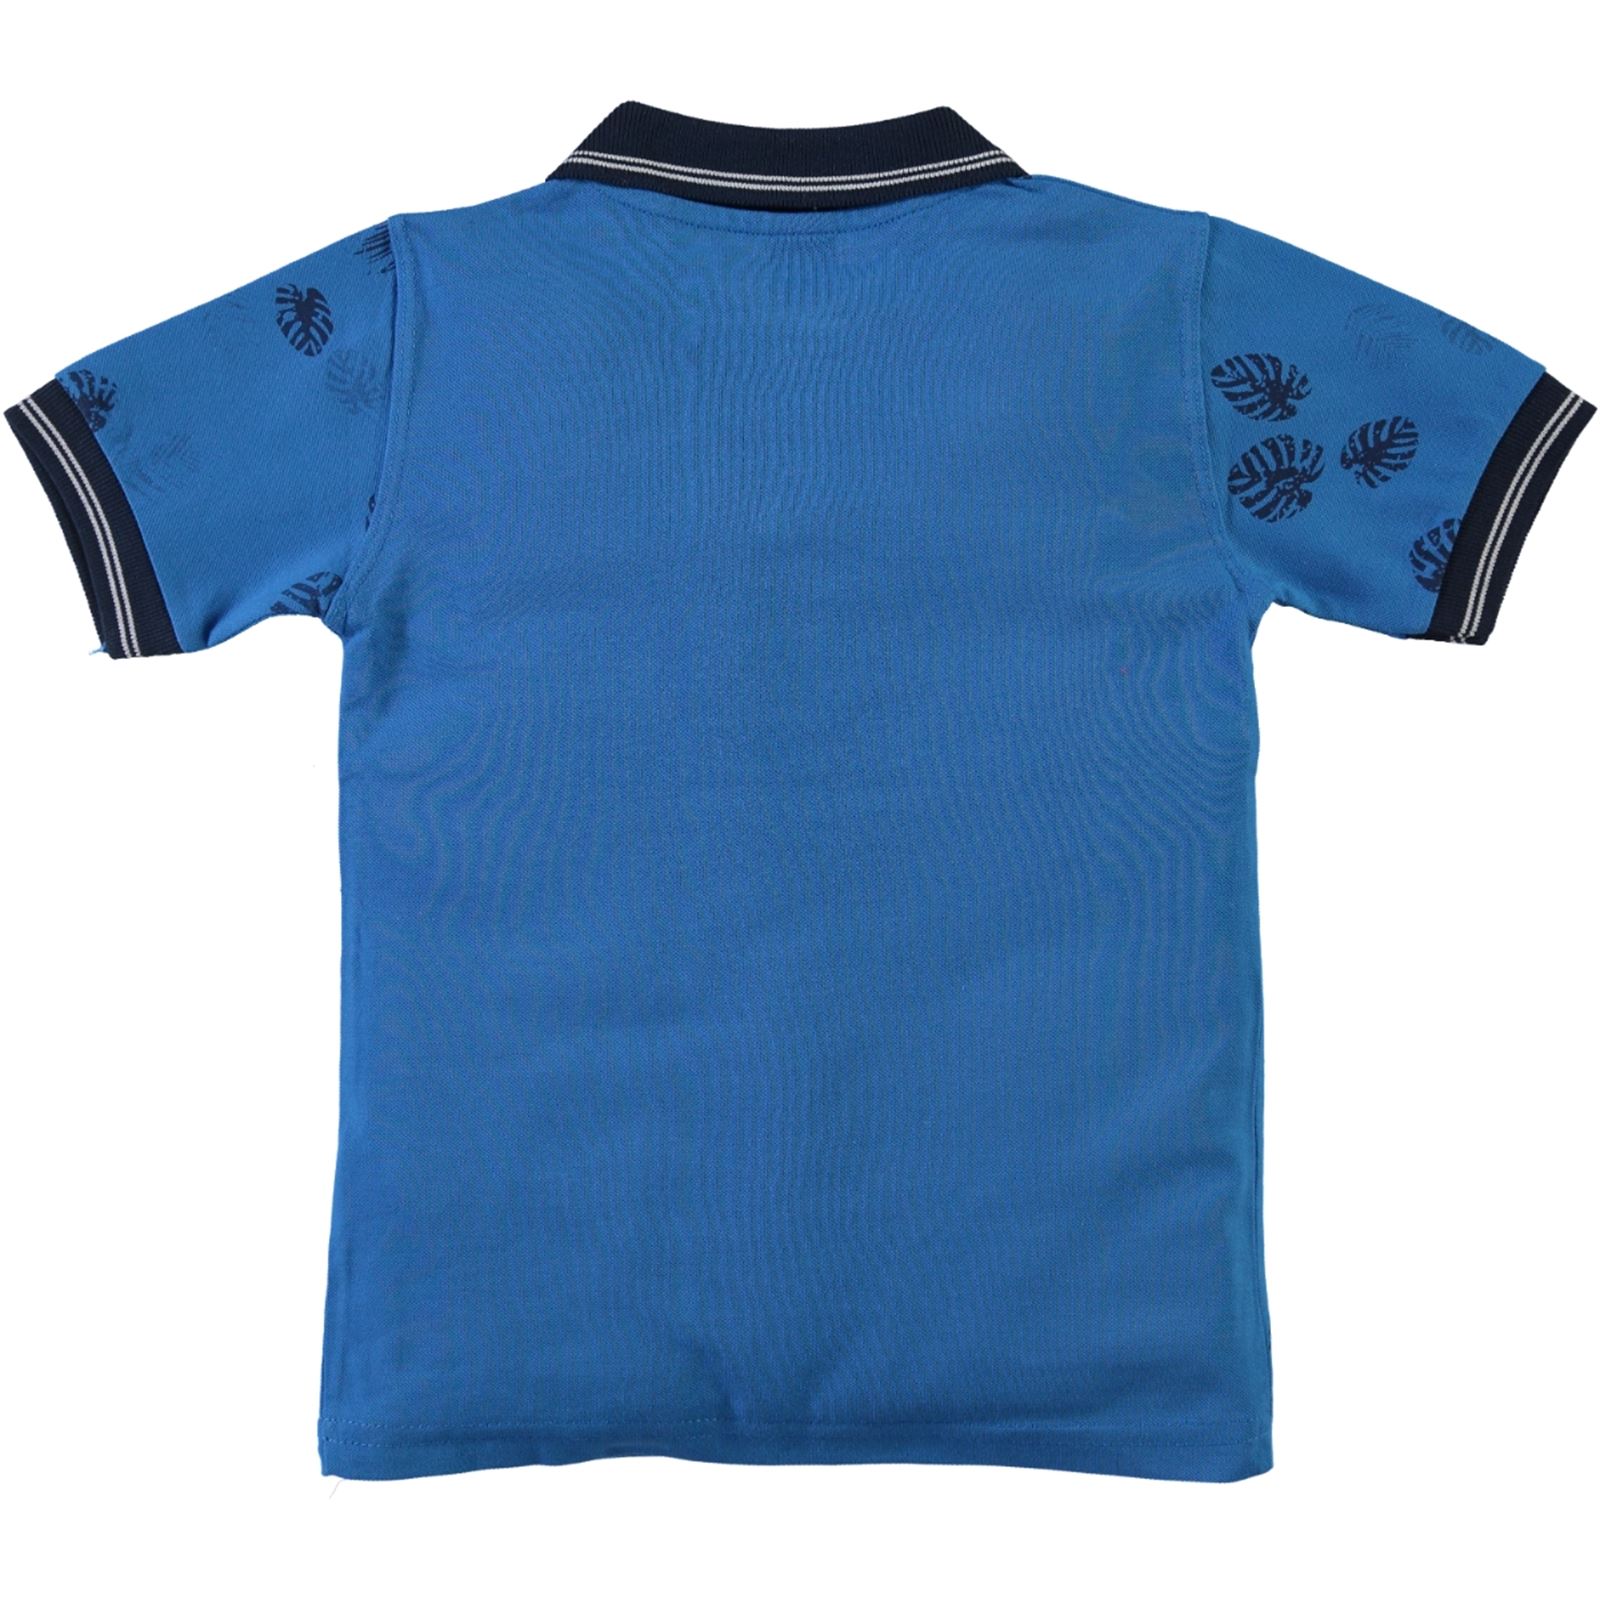 Popito Erkek Çocuk Tişört 6-9 Yaş Saks Mavisi